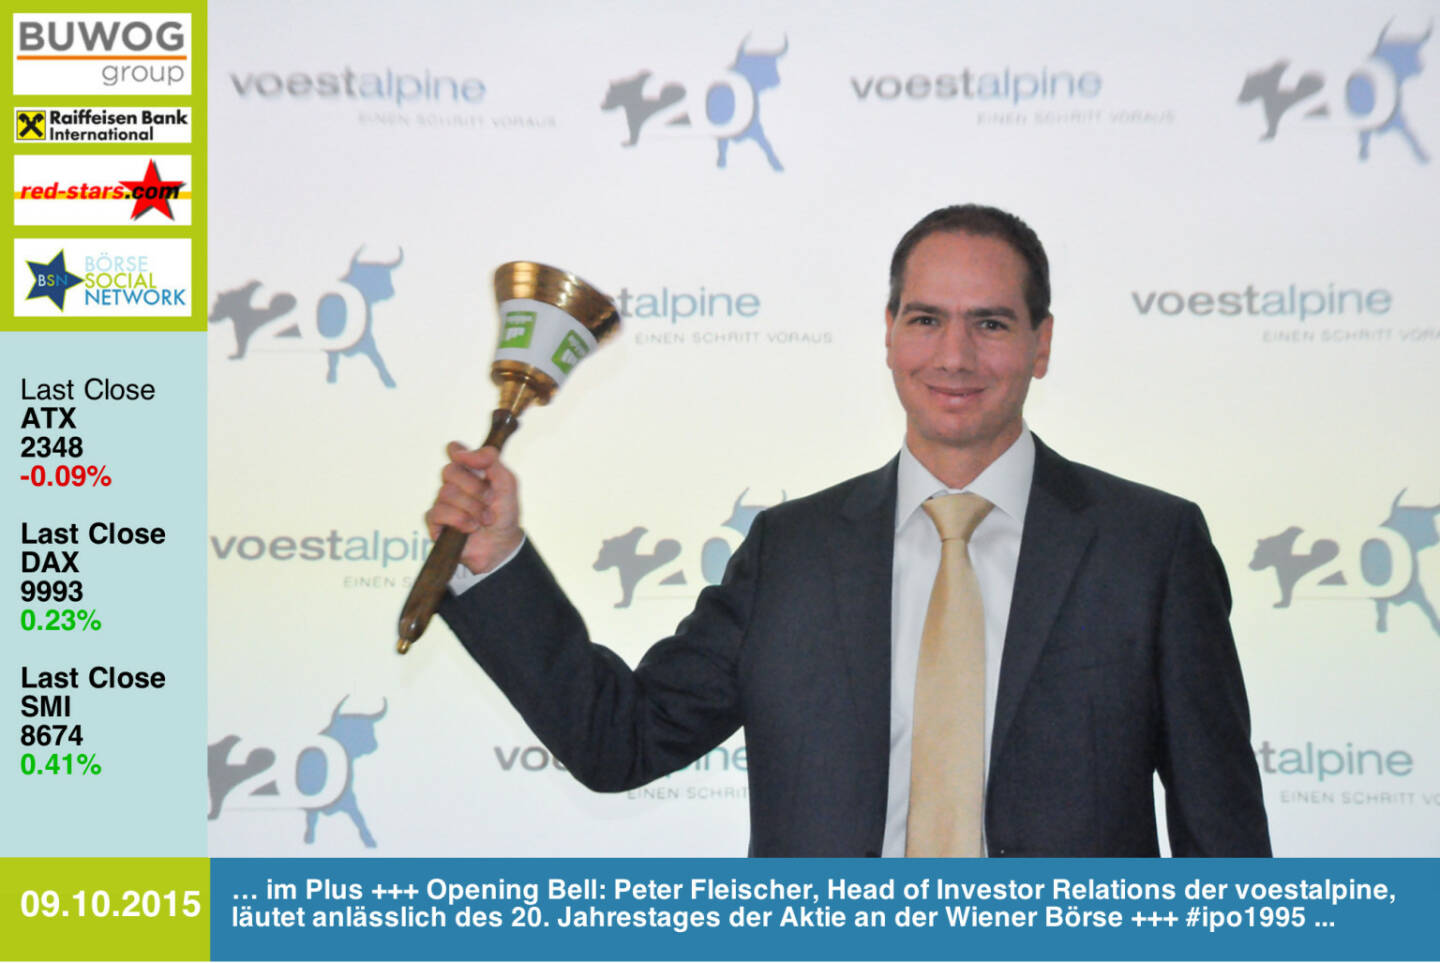 #openingbell am 9.10.: Peter Fleischer, Head of Investor Relations der voestalpine, läutet anlässlich des 20. Jahrestages der Aktie an der Wiener Börse #ipo1995 http://www.openingbell.eu